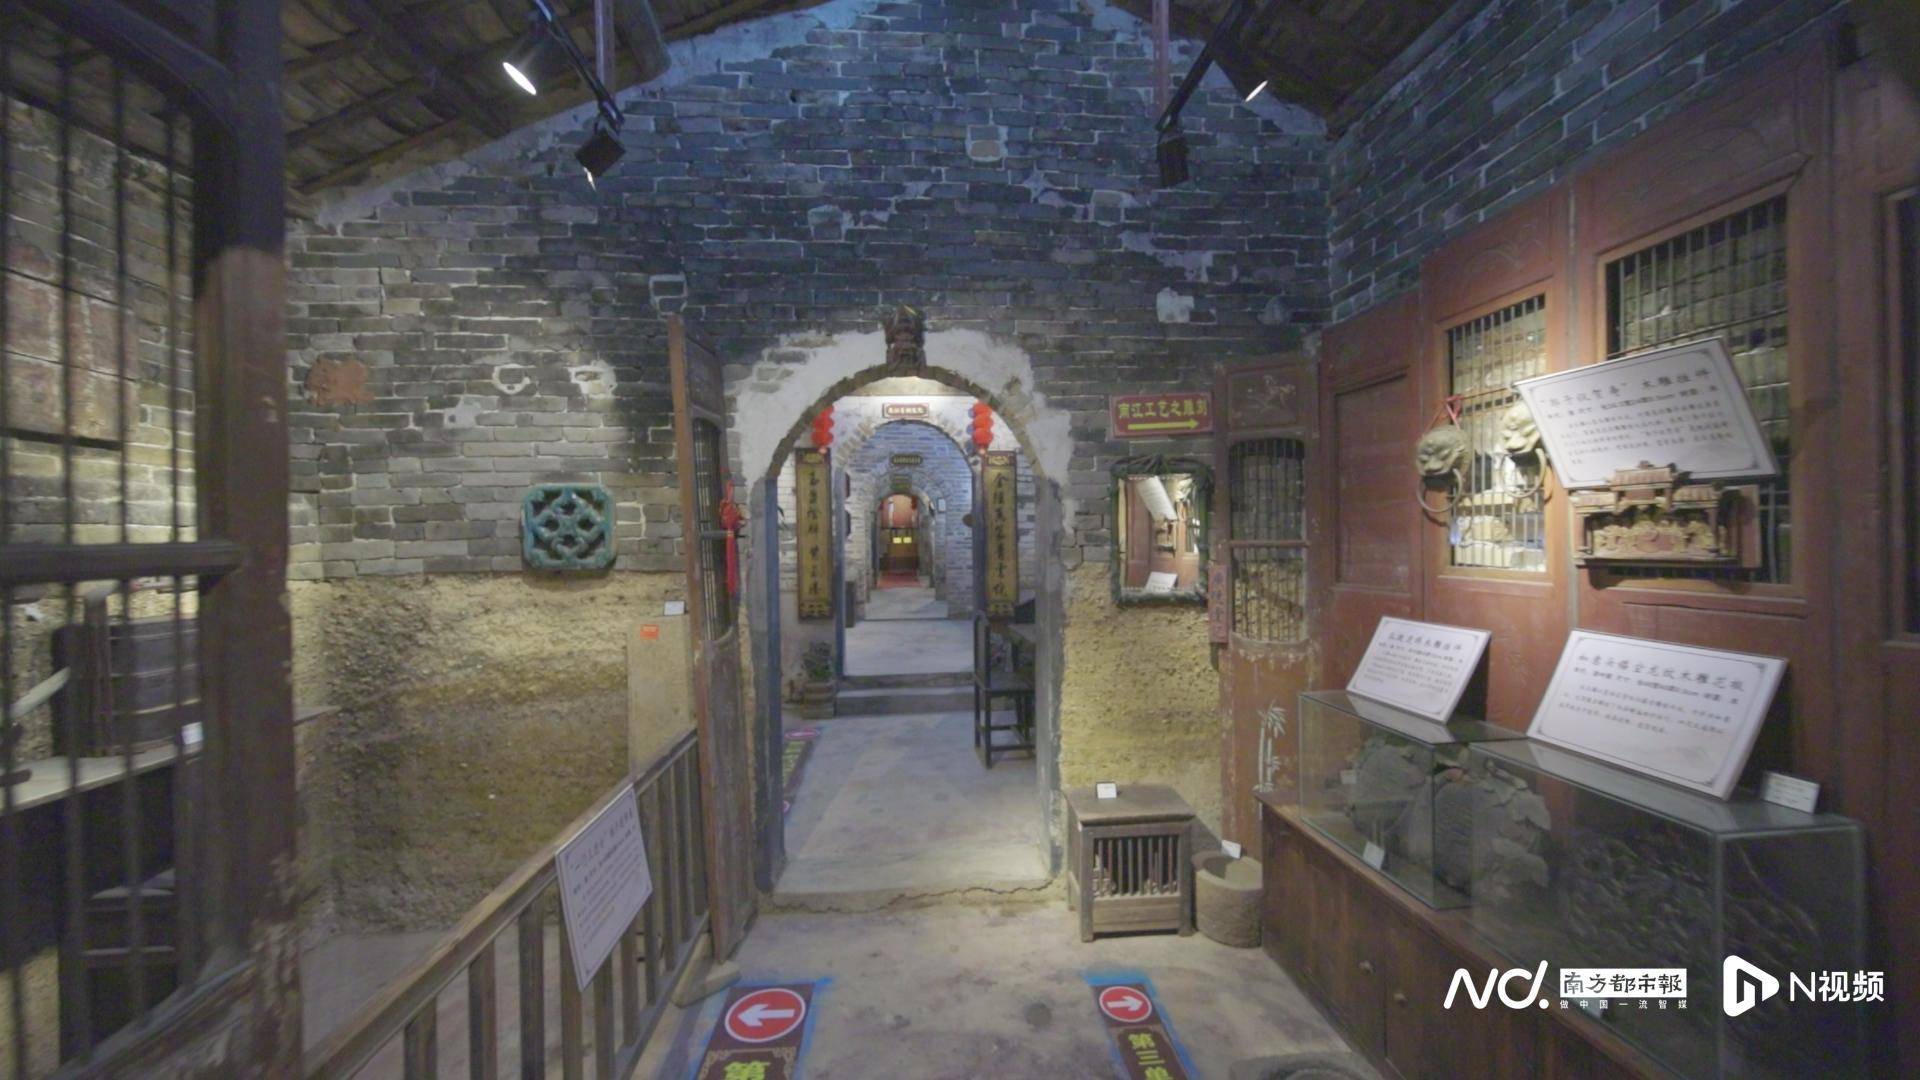 六代人薪火相传，云浮民间博物馆隐于古村，集万件奇珍异宝